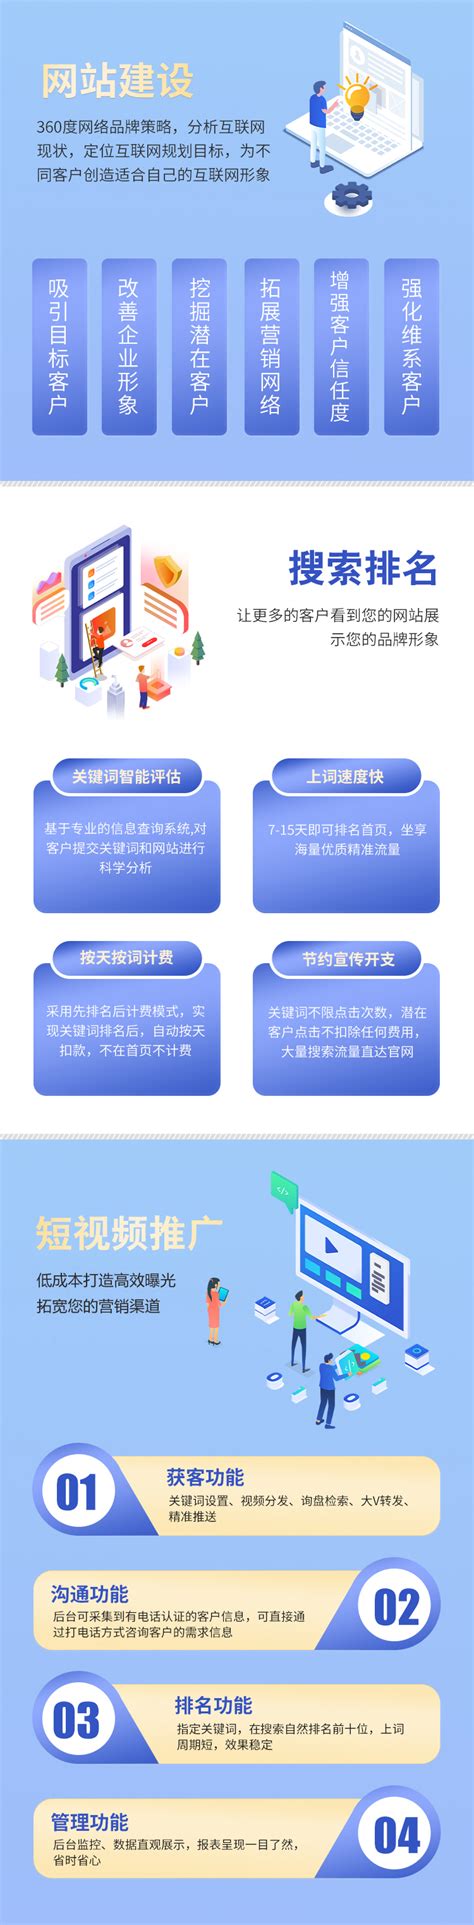 襄城专业网站优化服务介绍